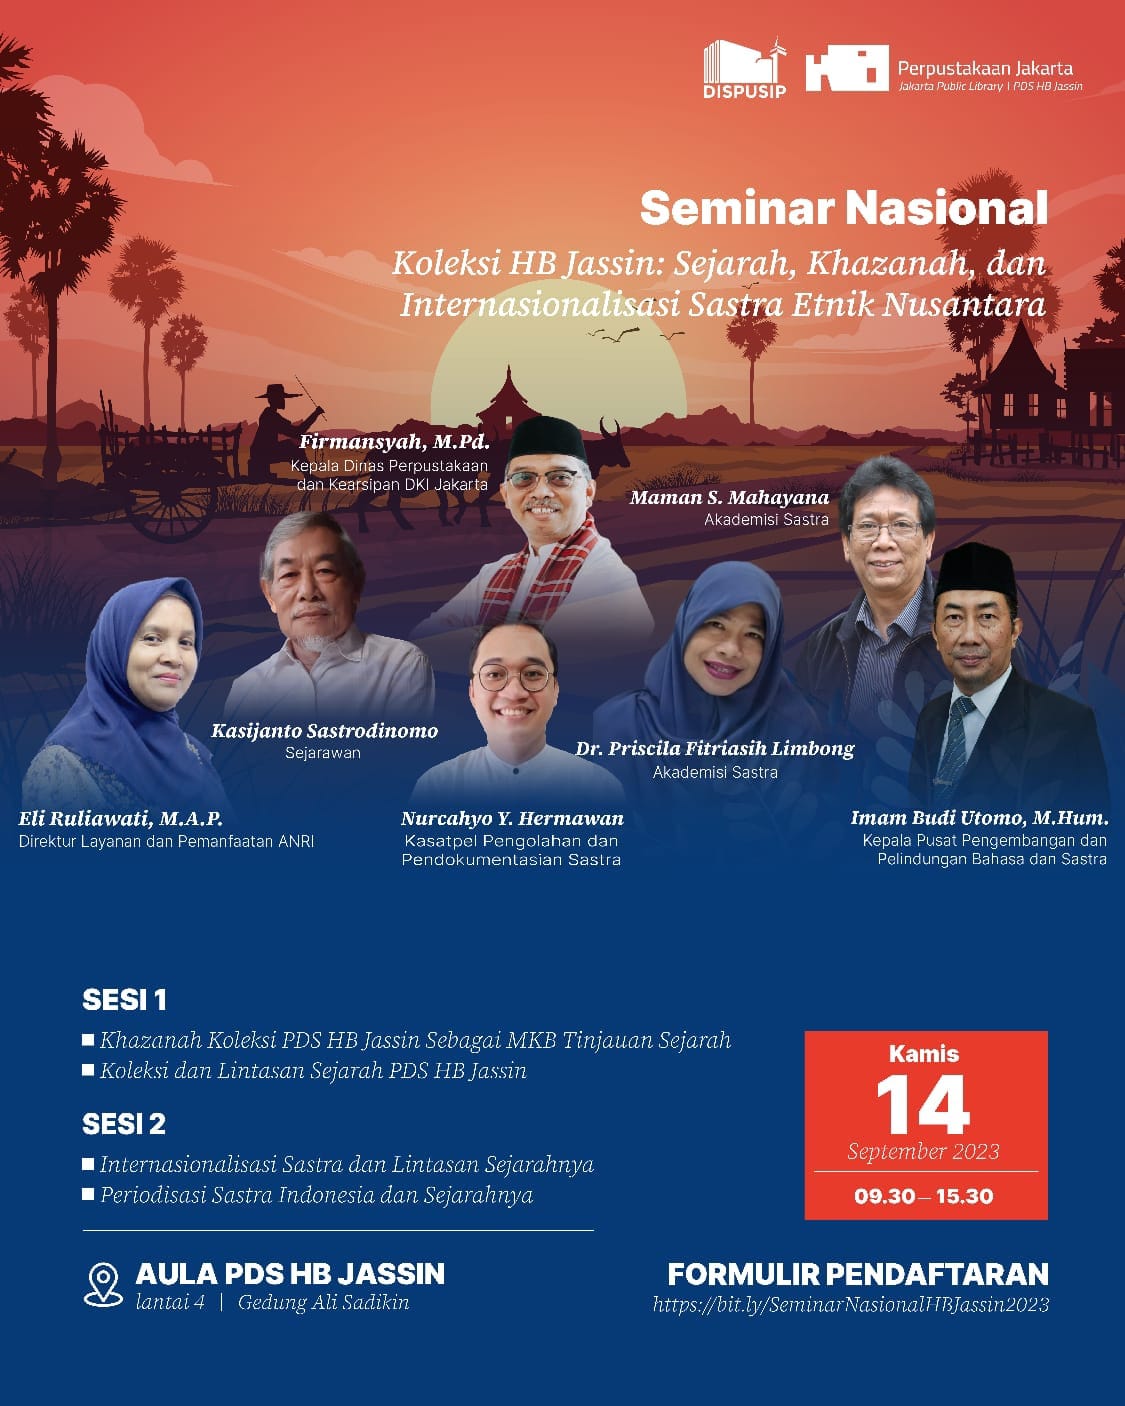 Seminar Nasional "Koleksi H.B. Jassin: Sejarah, Khazanah, Dan Internasionalisasi Sastra Etnik Nusantara"